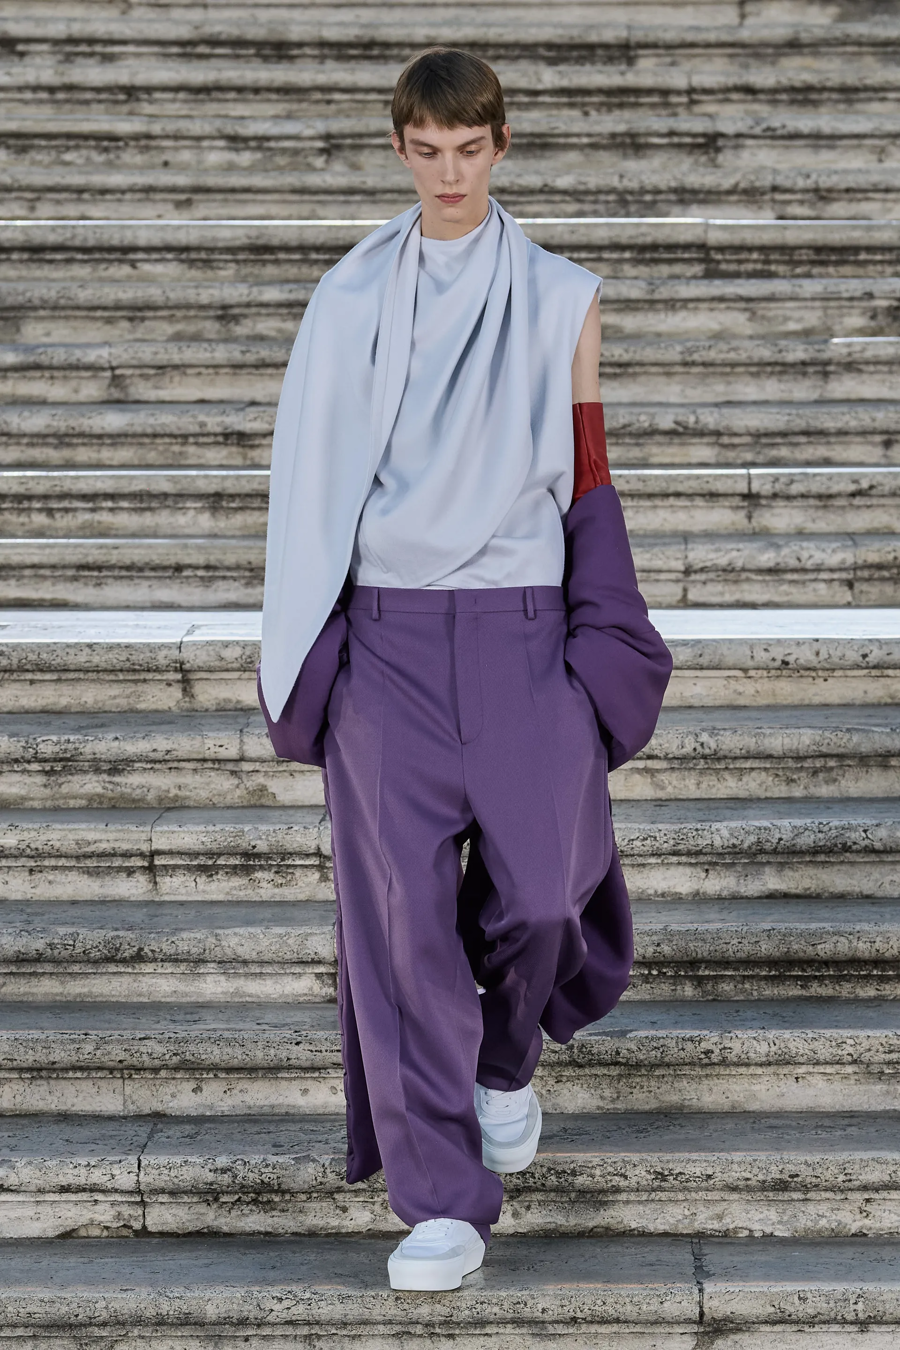 Valentino Haute Couture 2022: BST khiến Dior phải làm đơn khiếu nại - Ảnh 14